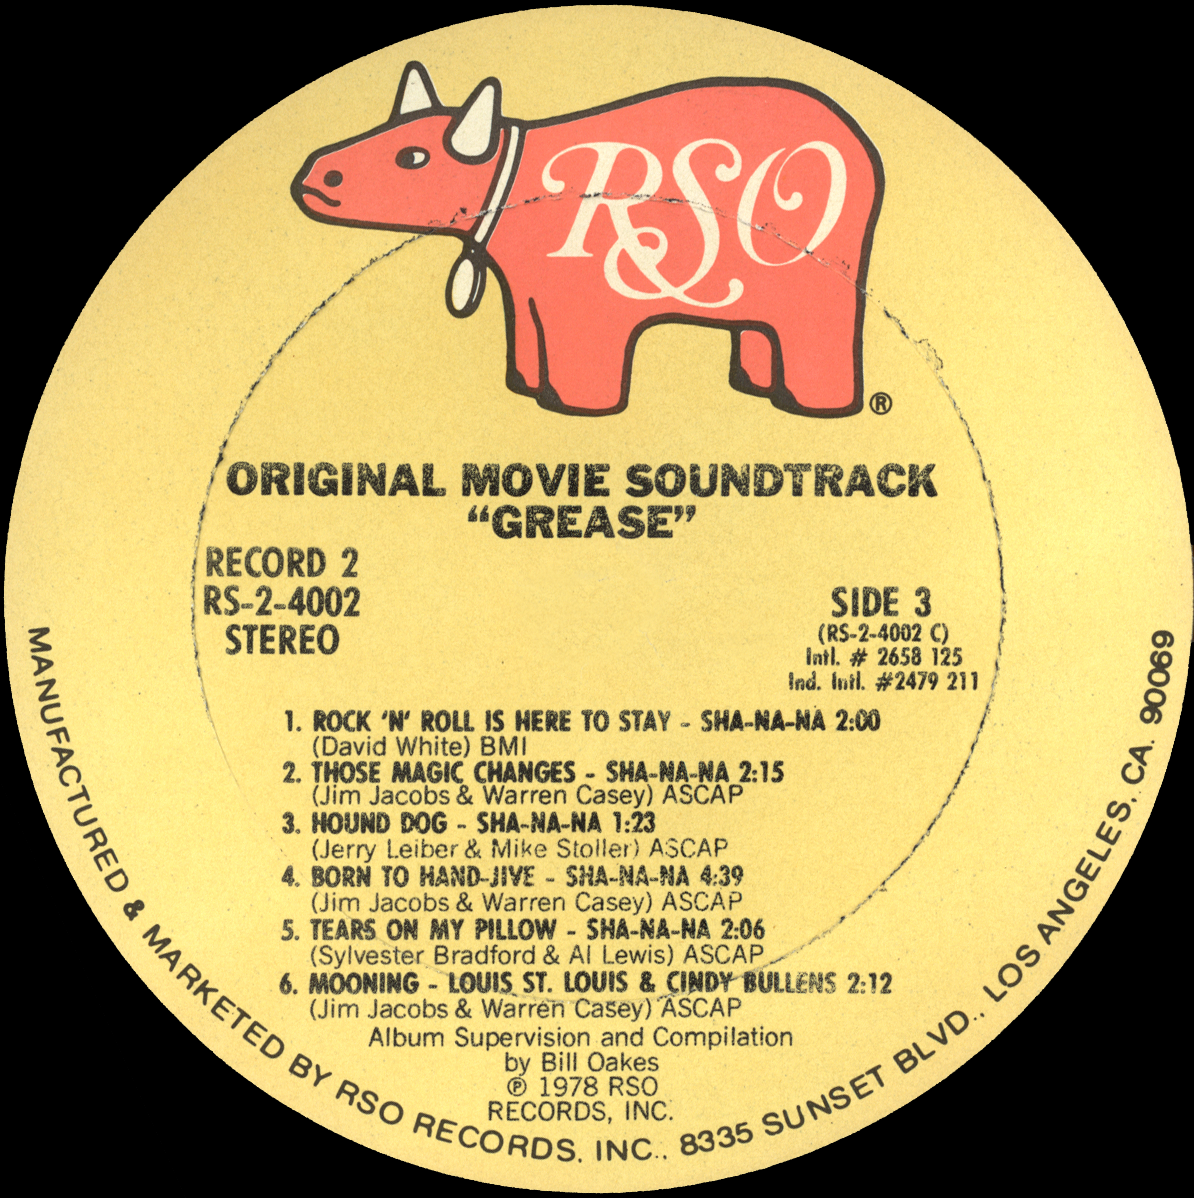 Grease â€“ Original Motion Picture Soundtrack | Vinyl Album Covers.com